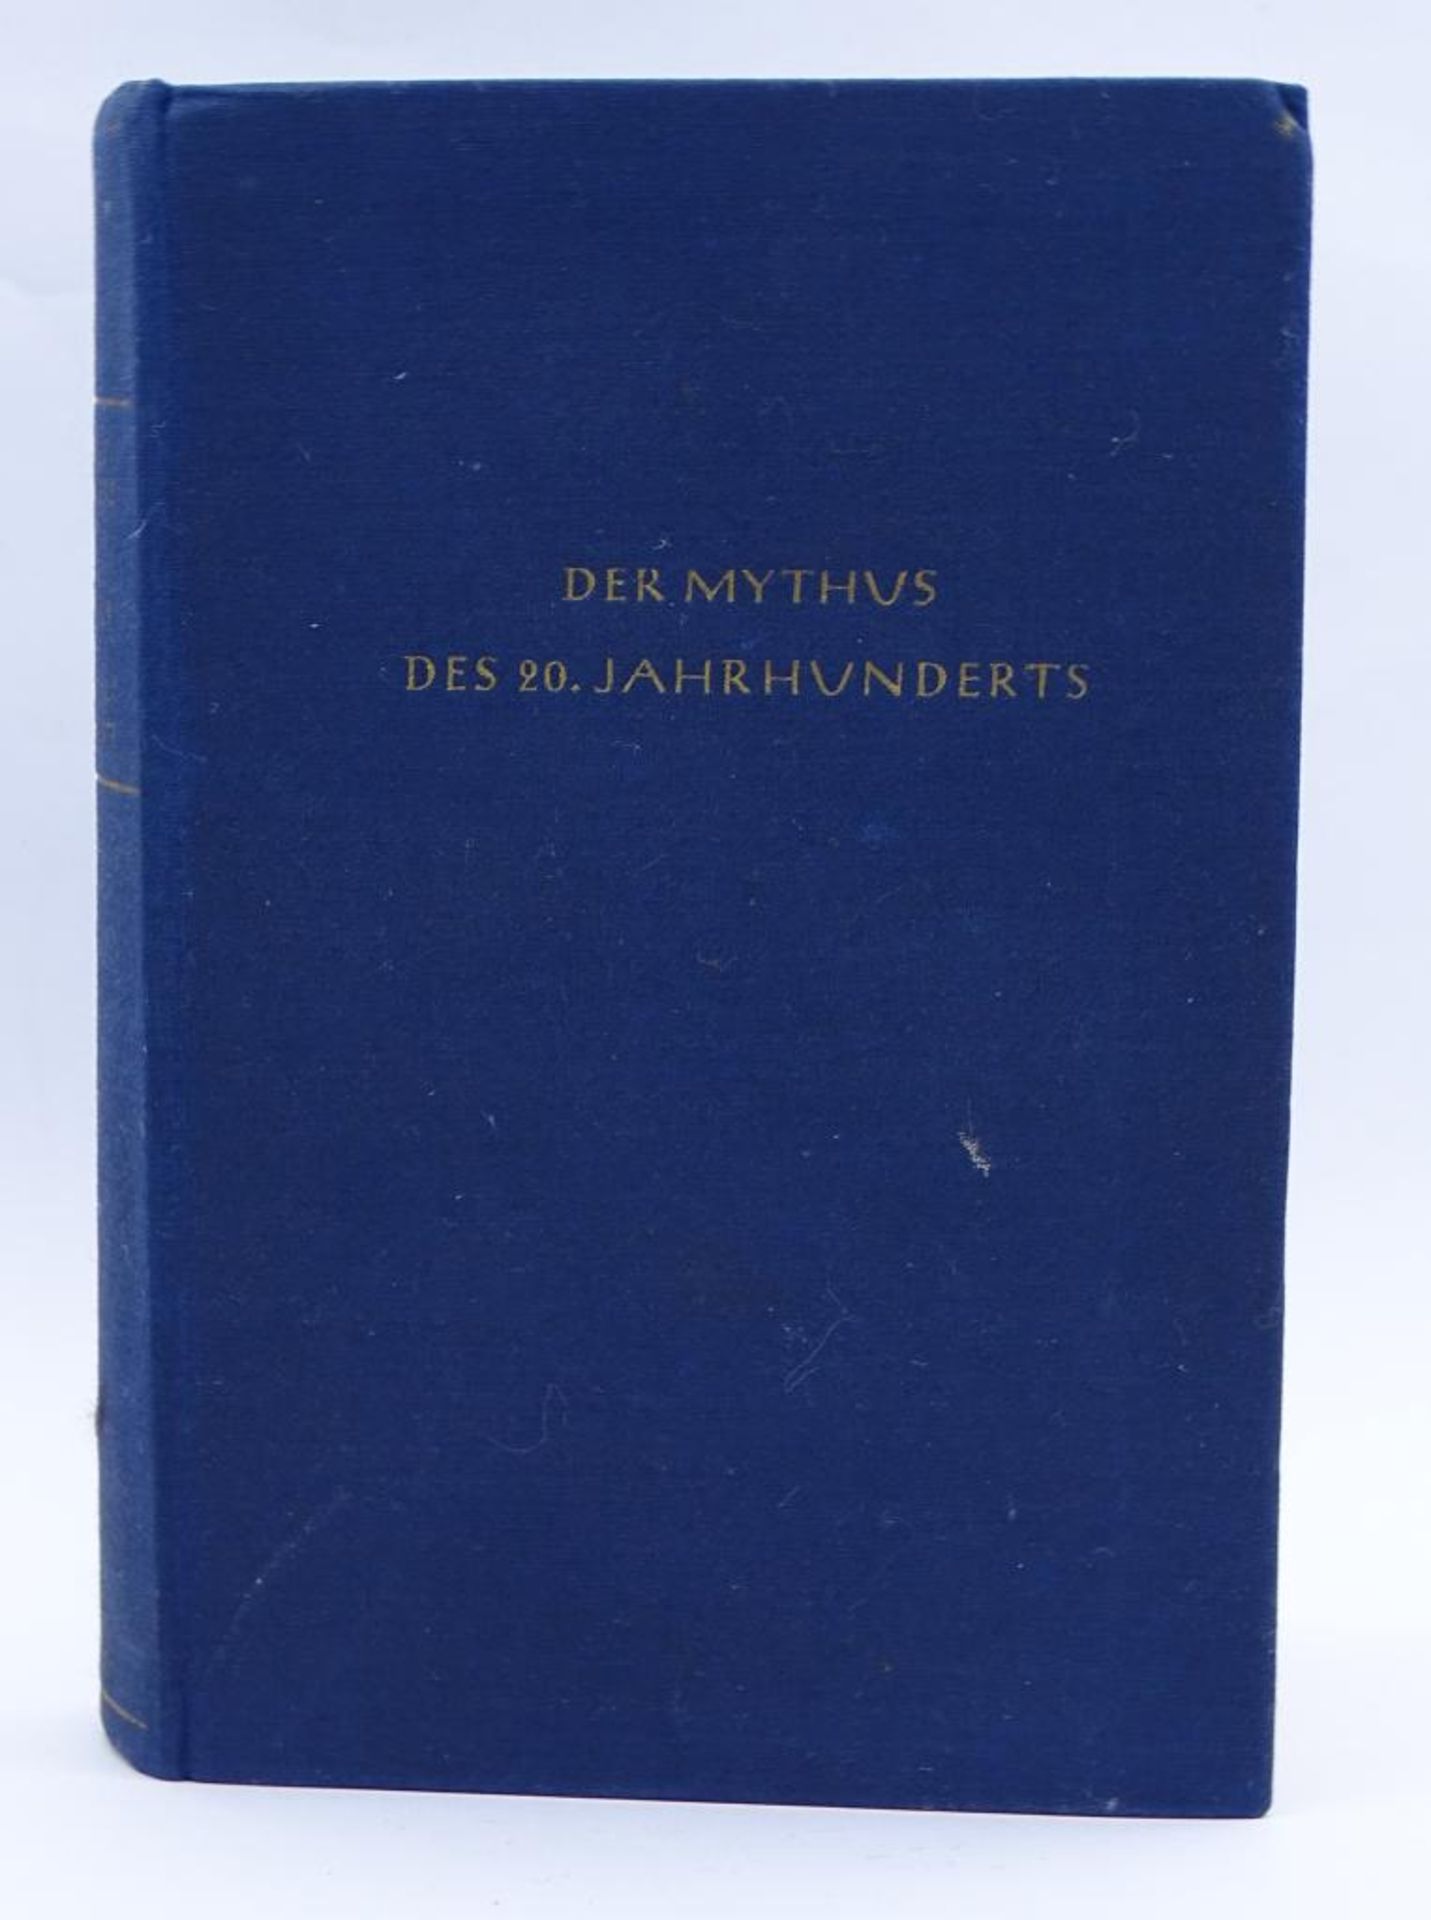 Buch "Mythus des 20.Jahrhunderts" von Alfred Rosenberg,vorne mit Widmung von 1942- - -22.61 %